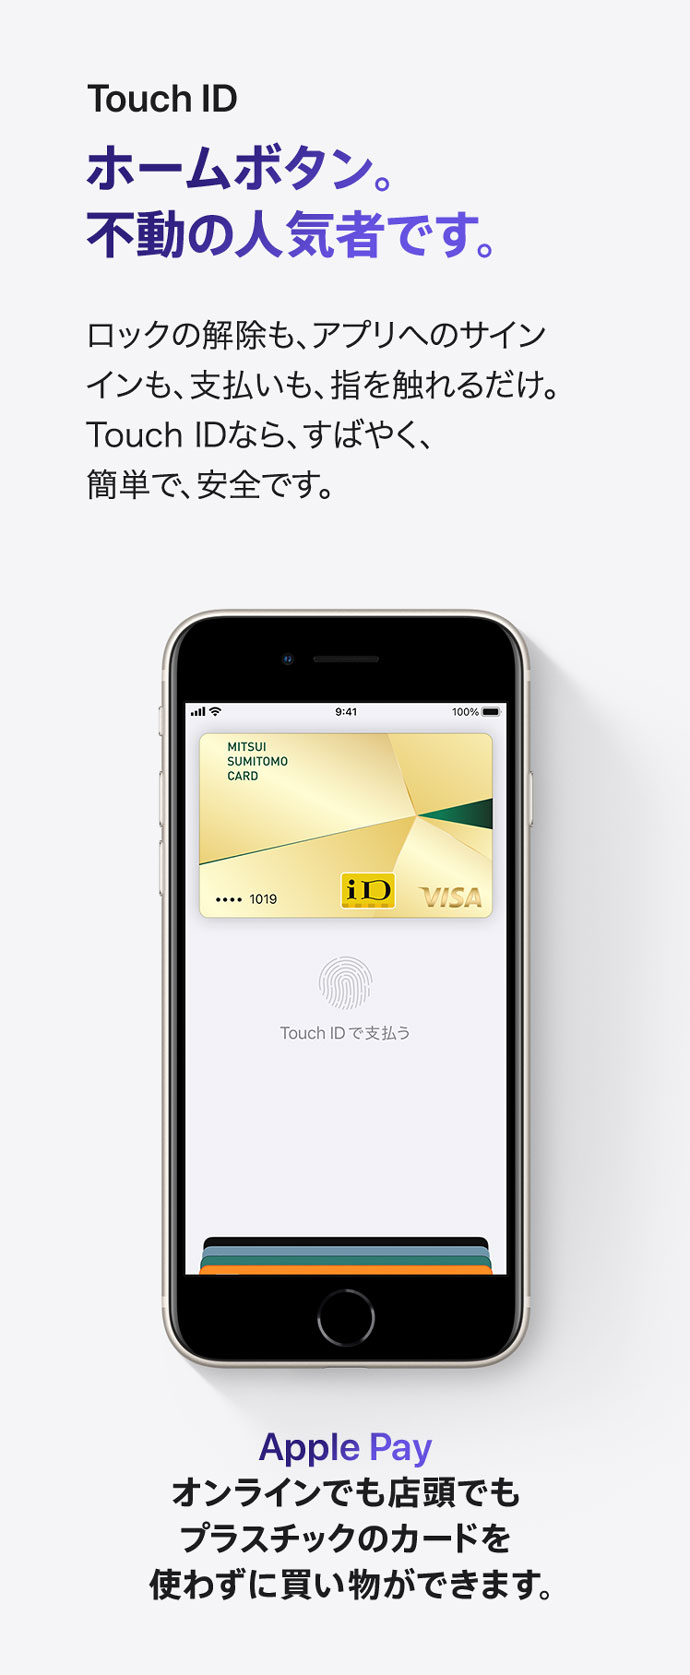 Touch ID ホームボタン。不動の人気者です。 ロックの解除も、アプリへのサインインも、支払いも、指を触れるだけ。 Touch IDなら、すばやく、簡単で、安全です。 Apple Pay オンラインでも店頭でもプラスチックのカードを使わずに買い物ができます。